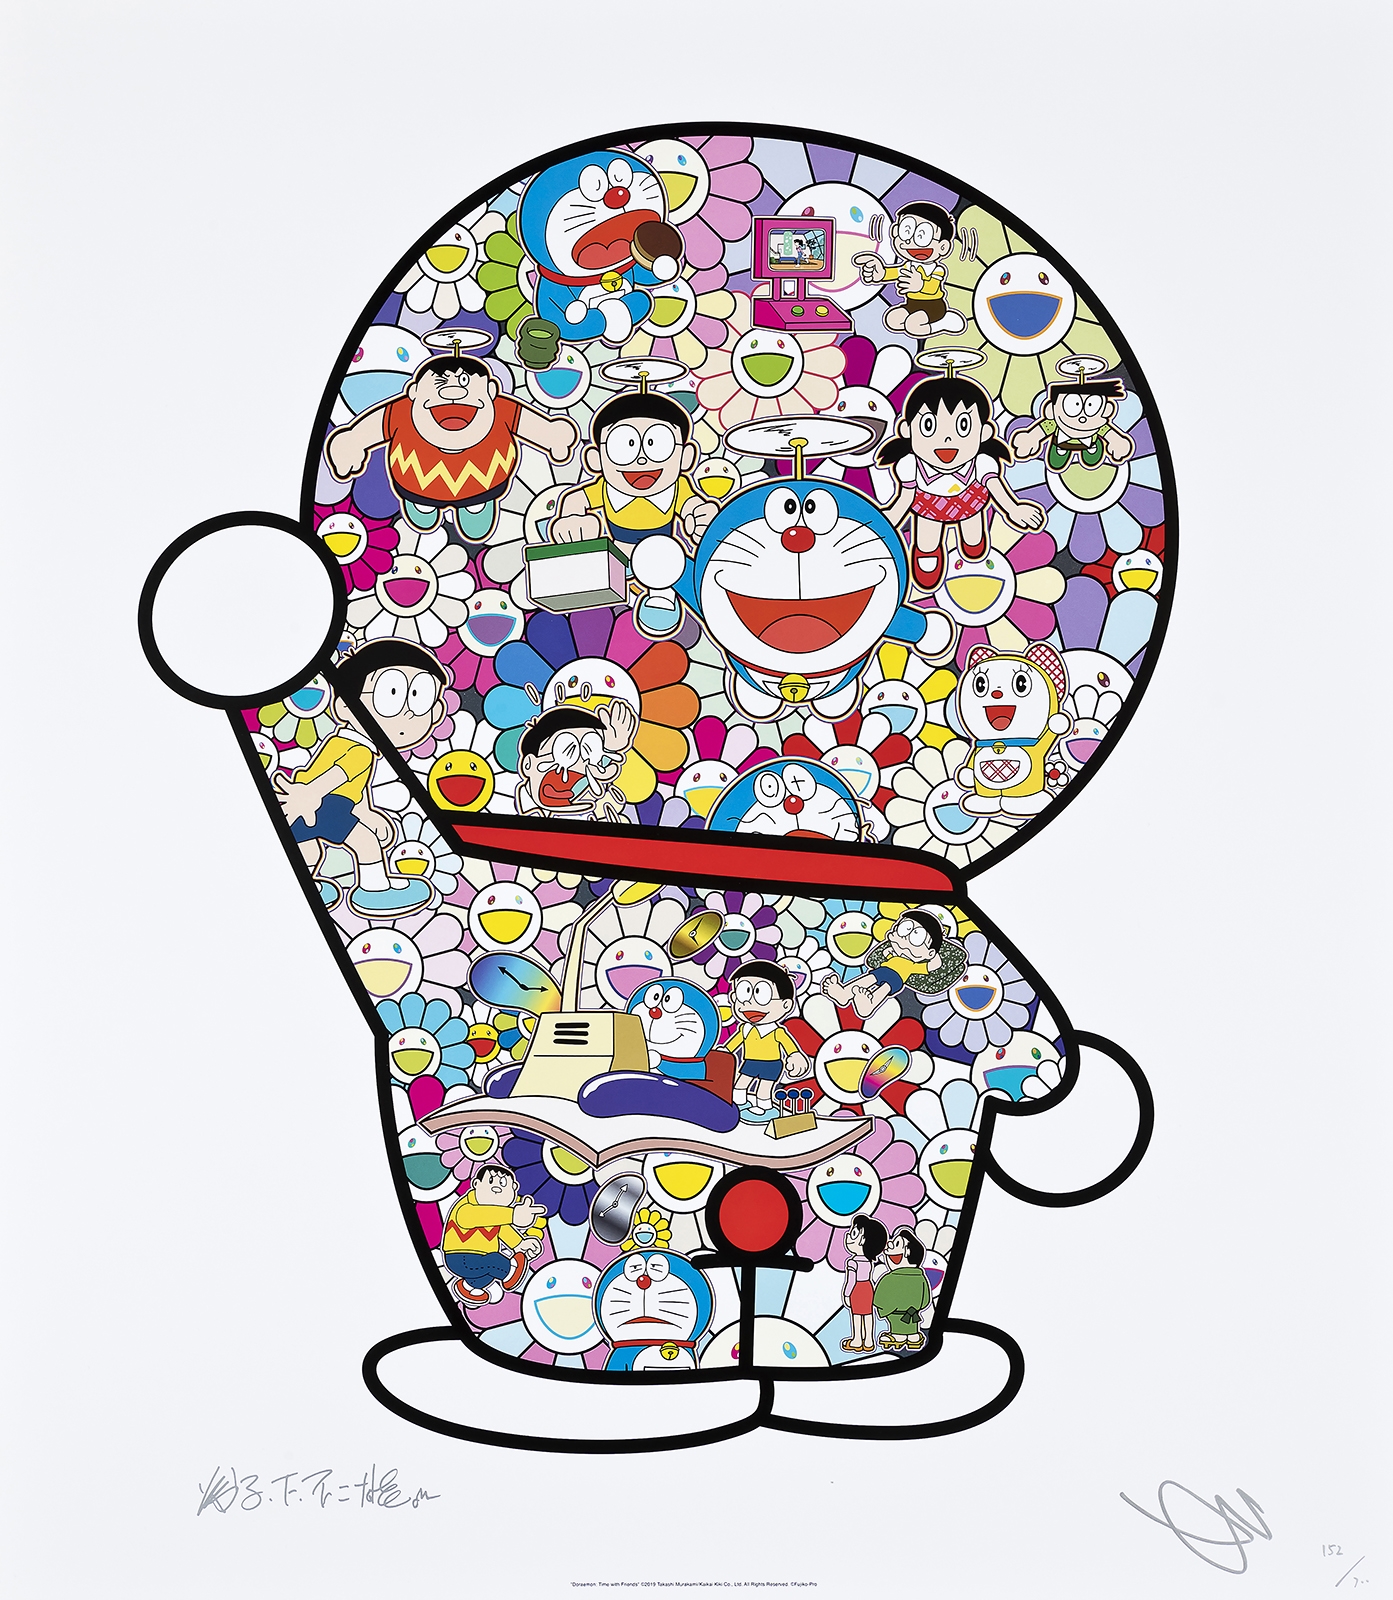 Takaoka Art - Artist: Takashi Murakami x Doraemon Title: Time Warp